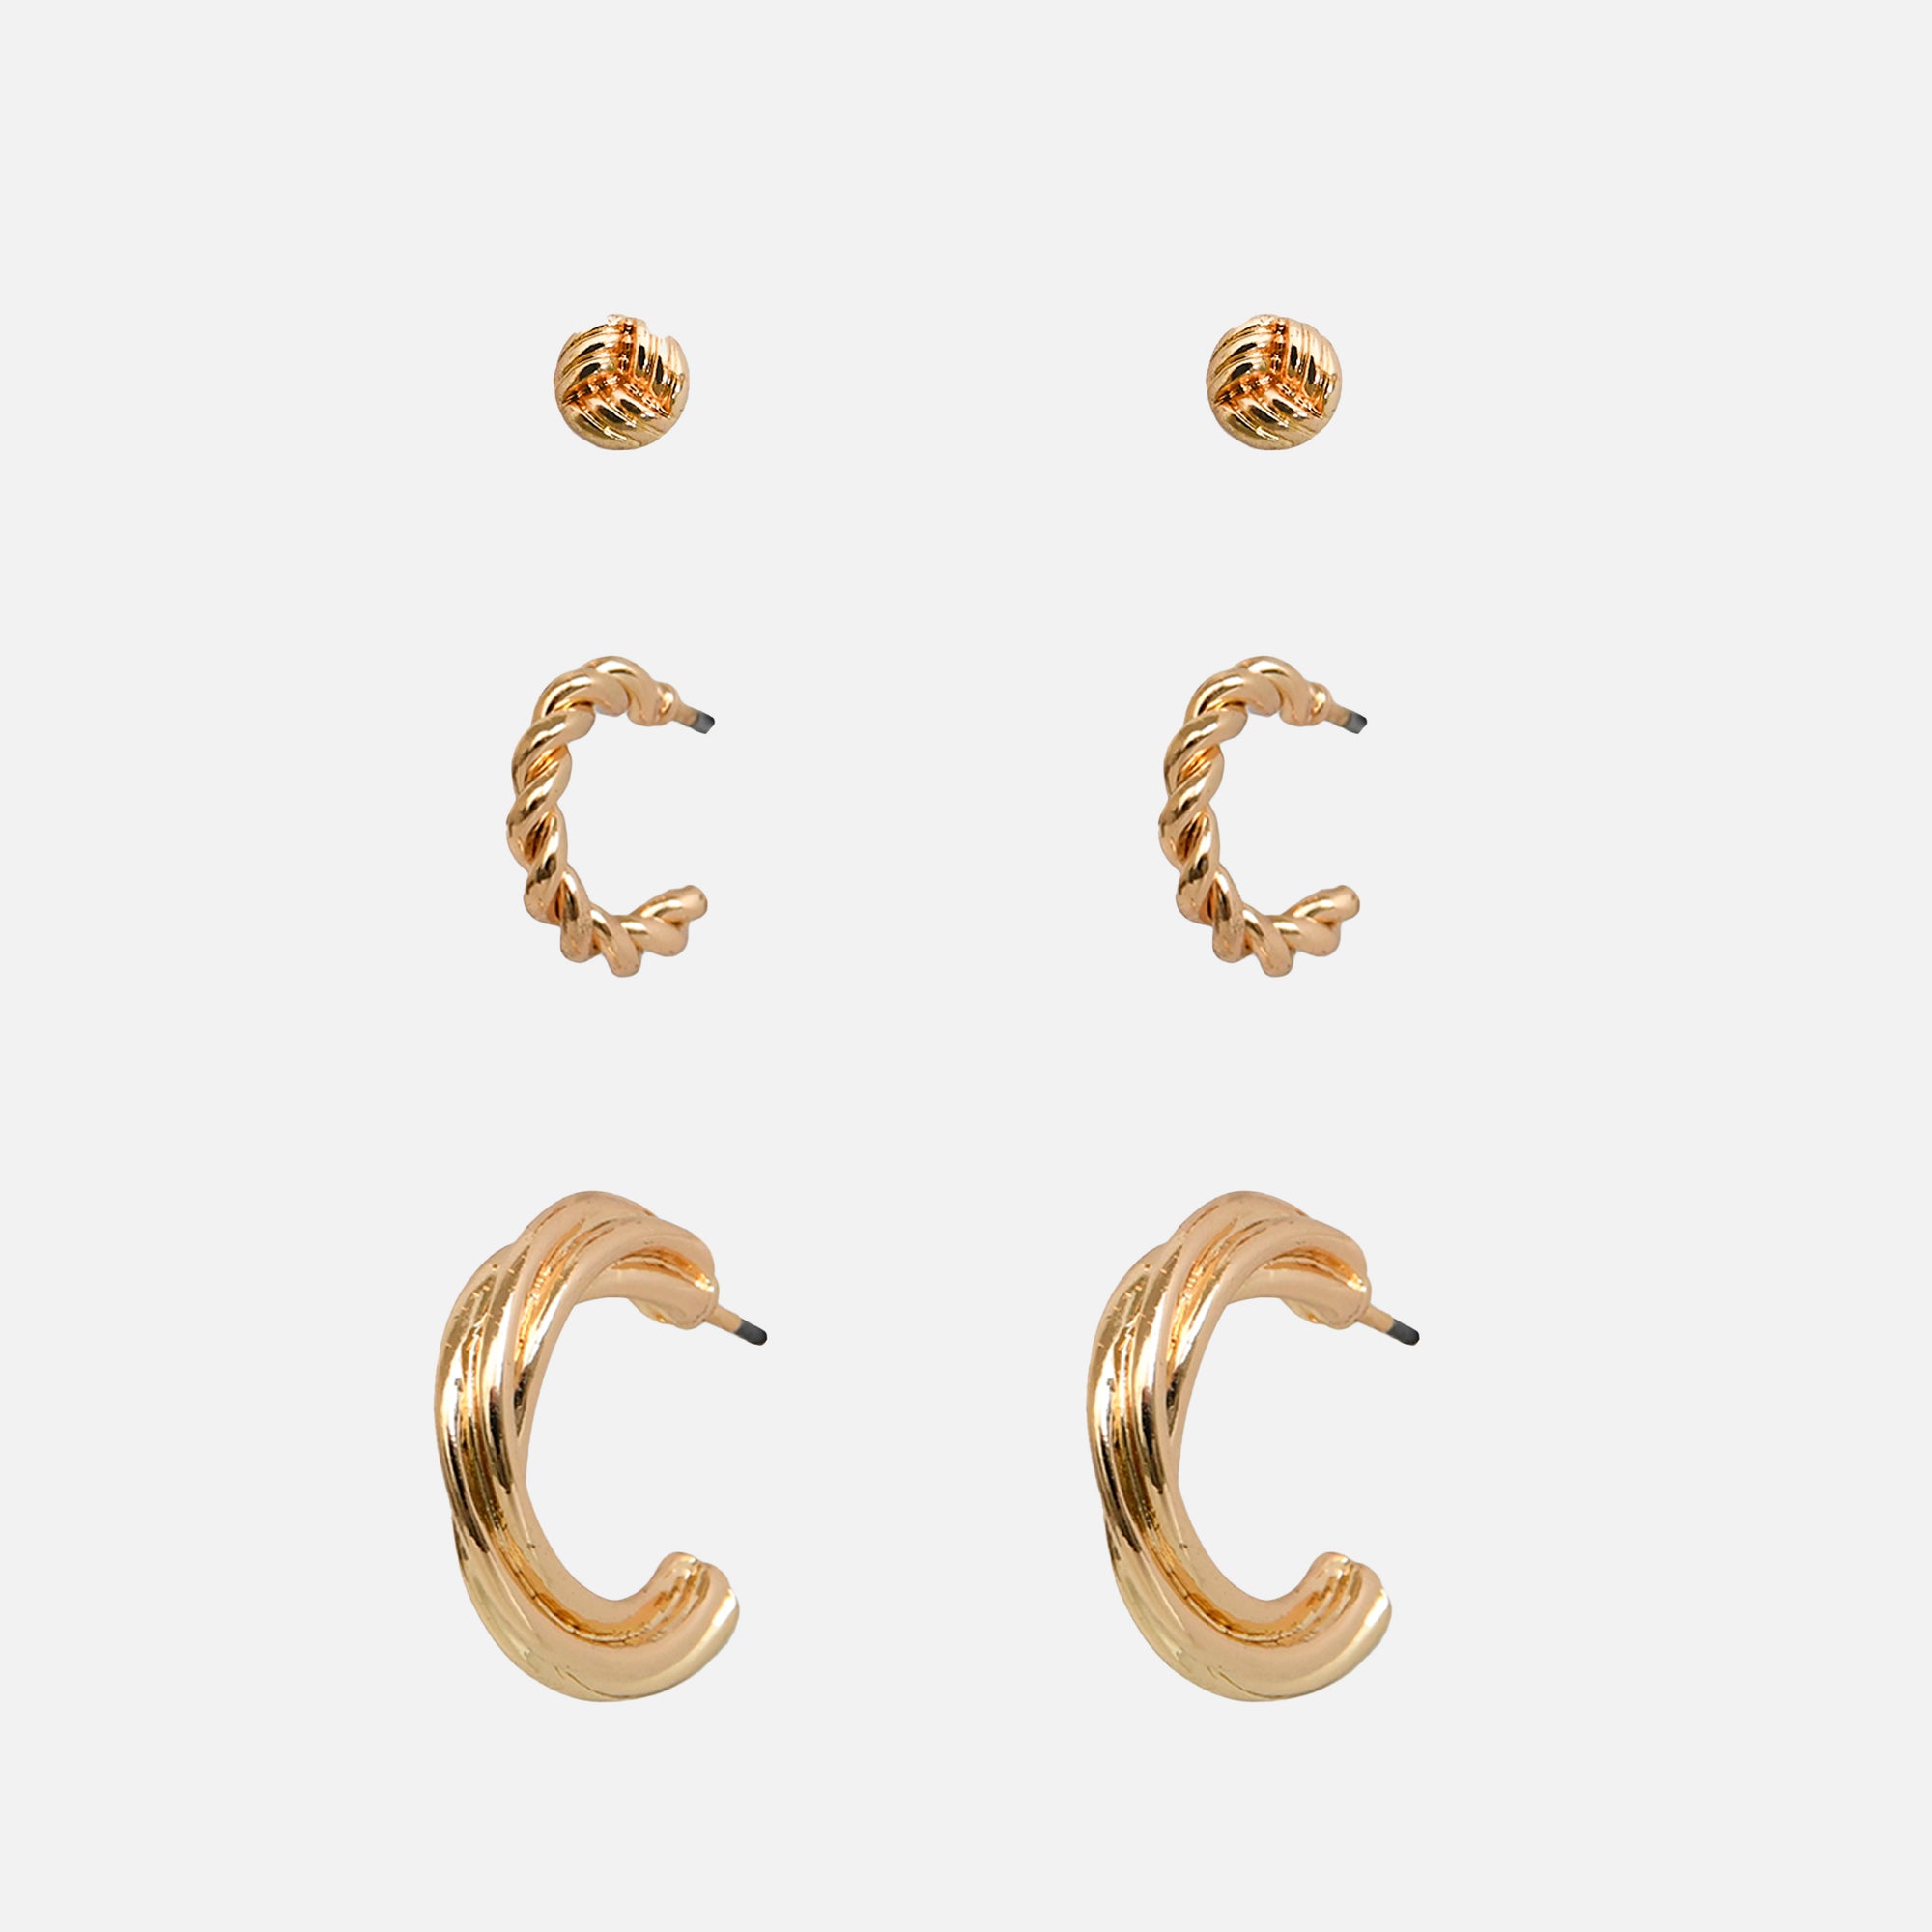 Trio de boucles d’oreilles dorées fixes et anneaux